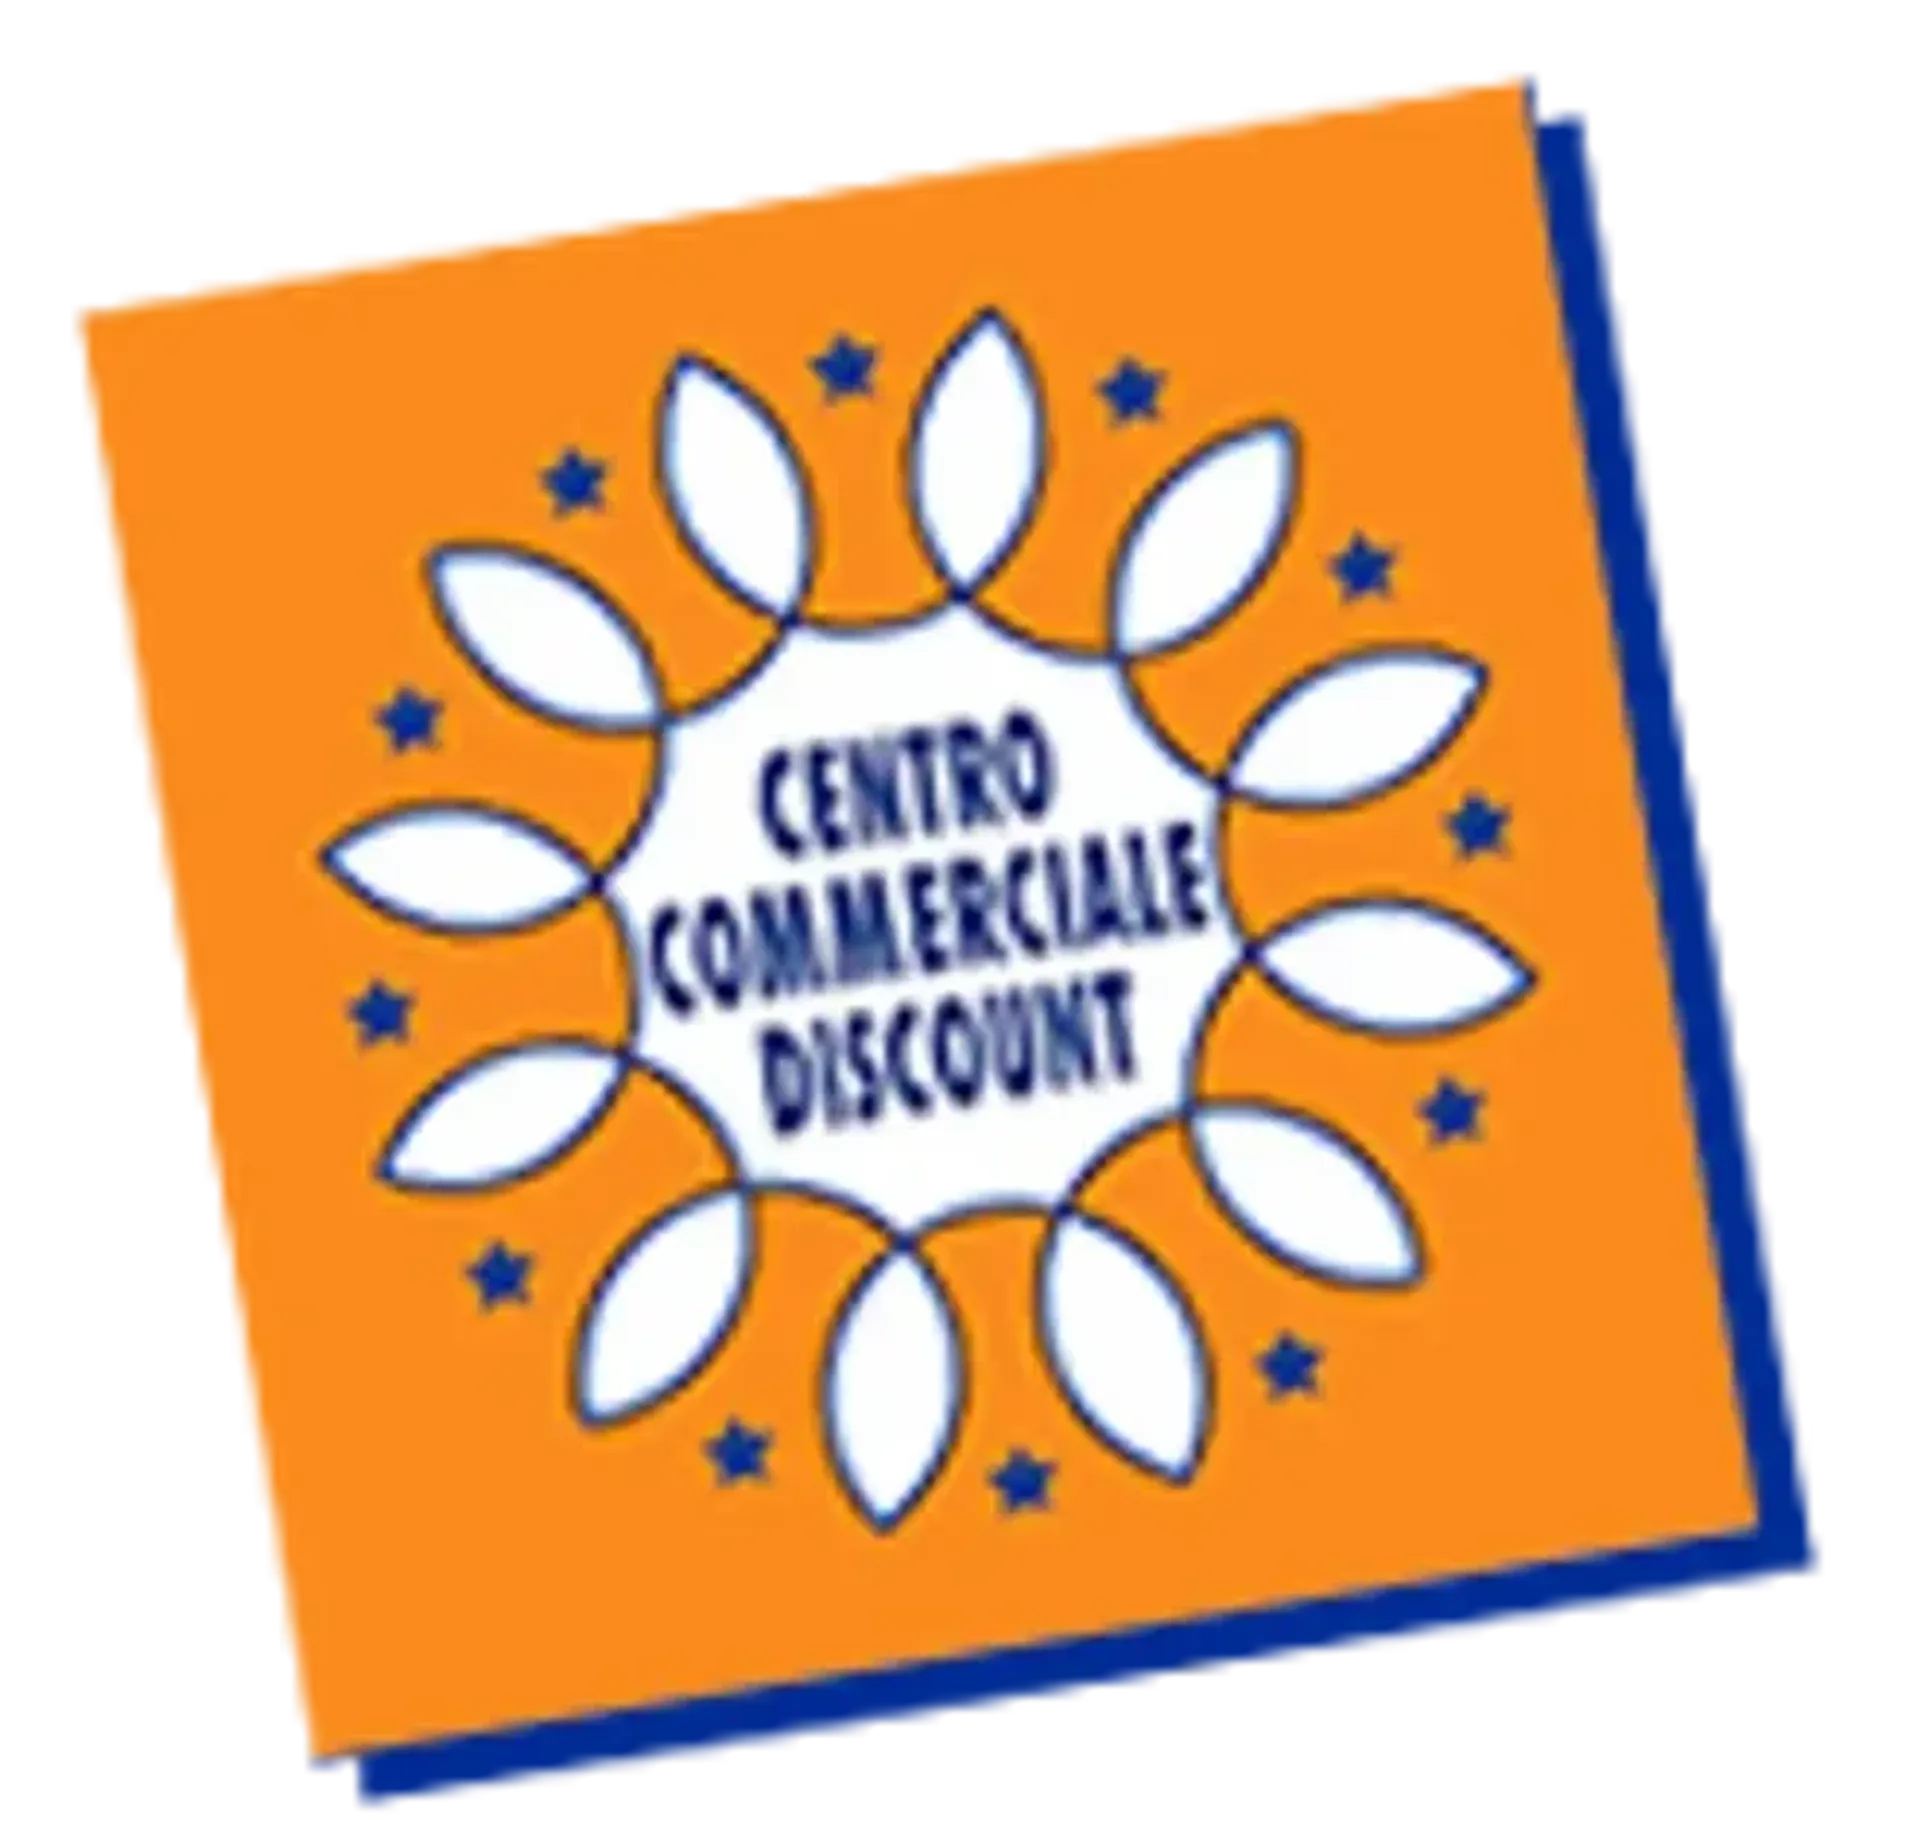 SCONTO CENTRO COMMERCIALE logo del volantino attuale